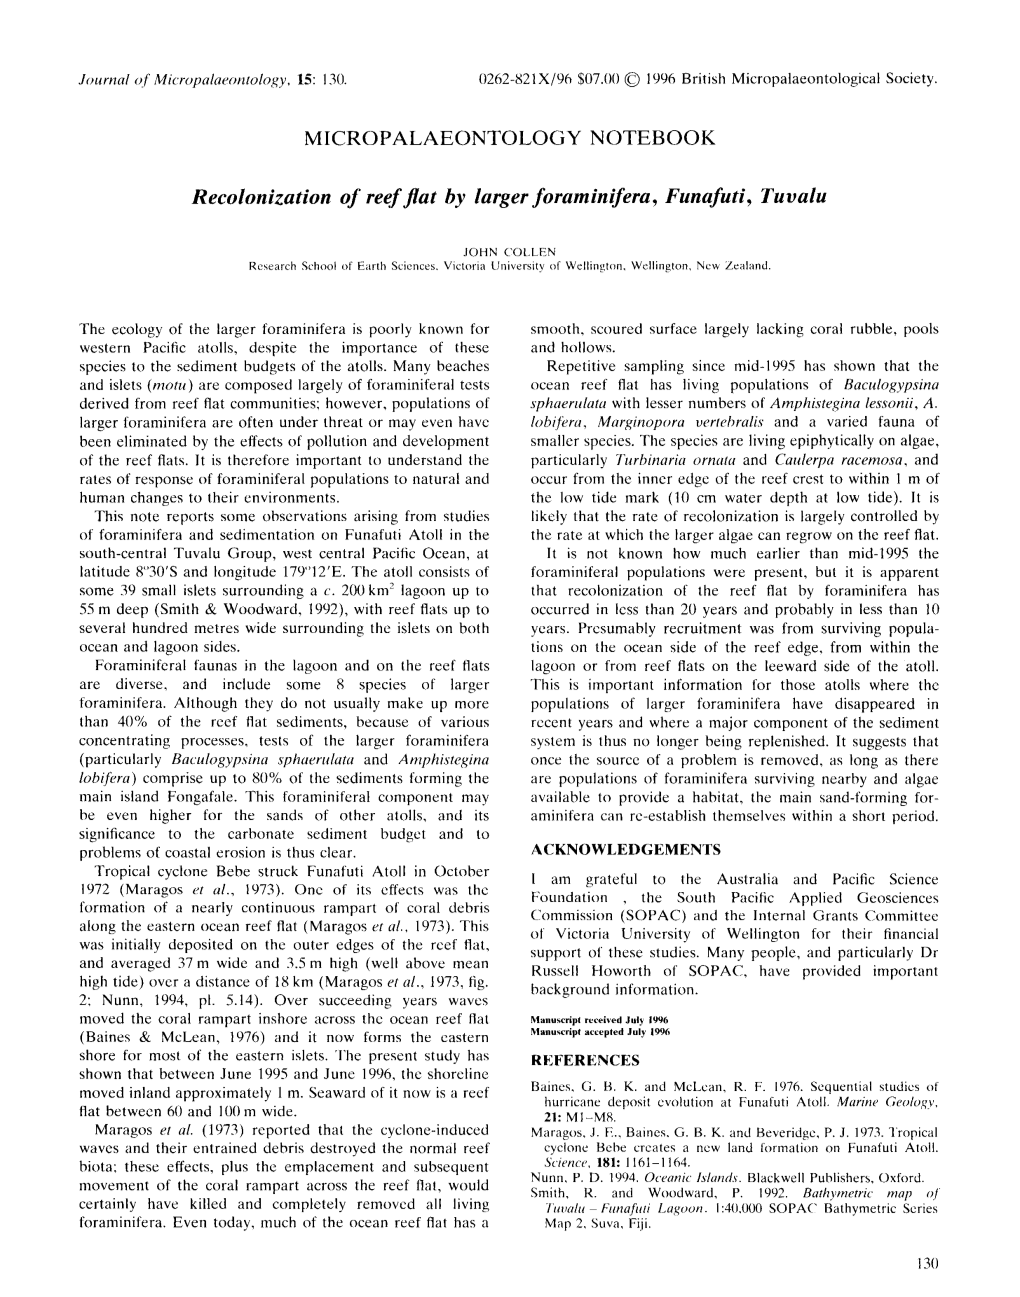 Recolonization of Reef Flat by Larger Foraminifera, Funafuti, Tuvalu